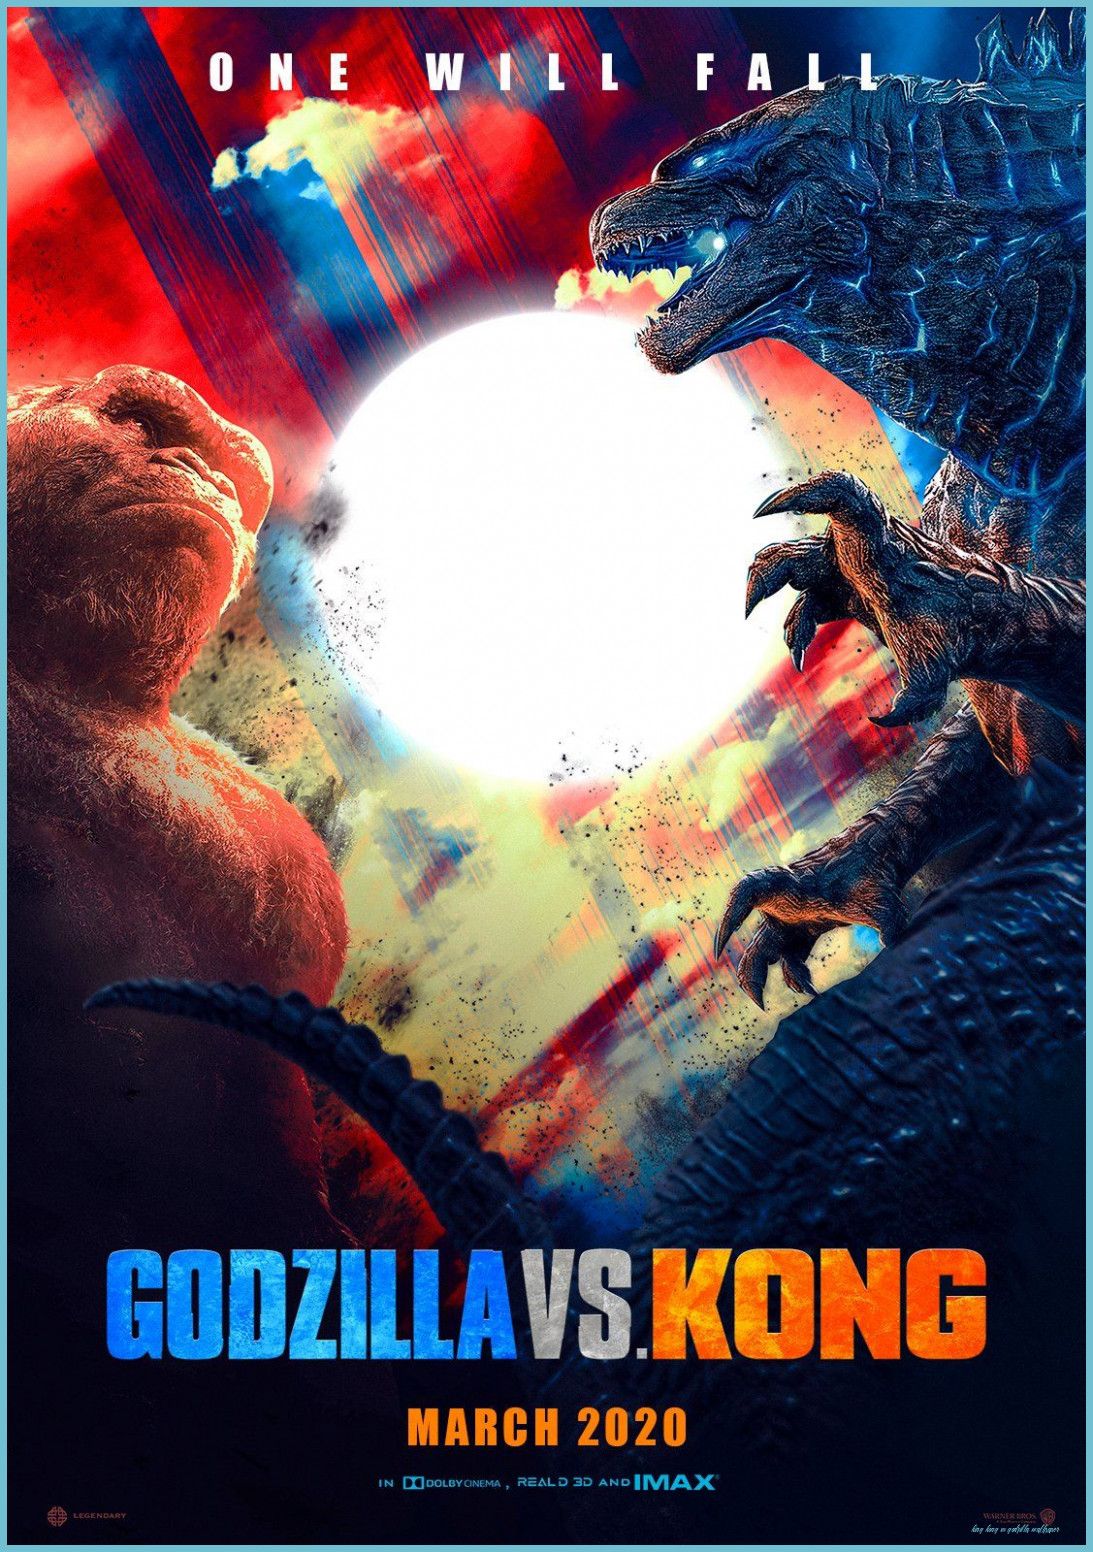 Twitter King Kong Vs Godzilla, Godzilla Wallpaper, Godzilla Vs Kong Vs Godzilla Wallpaper